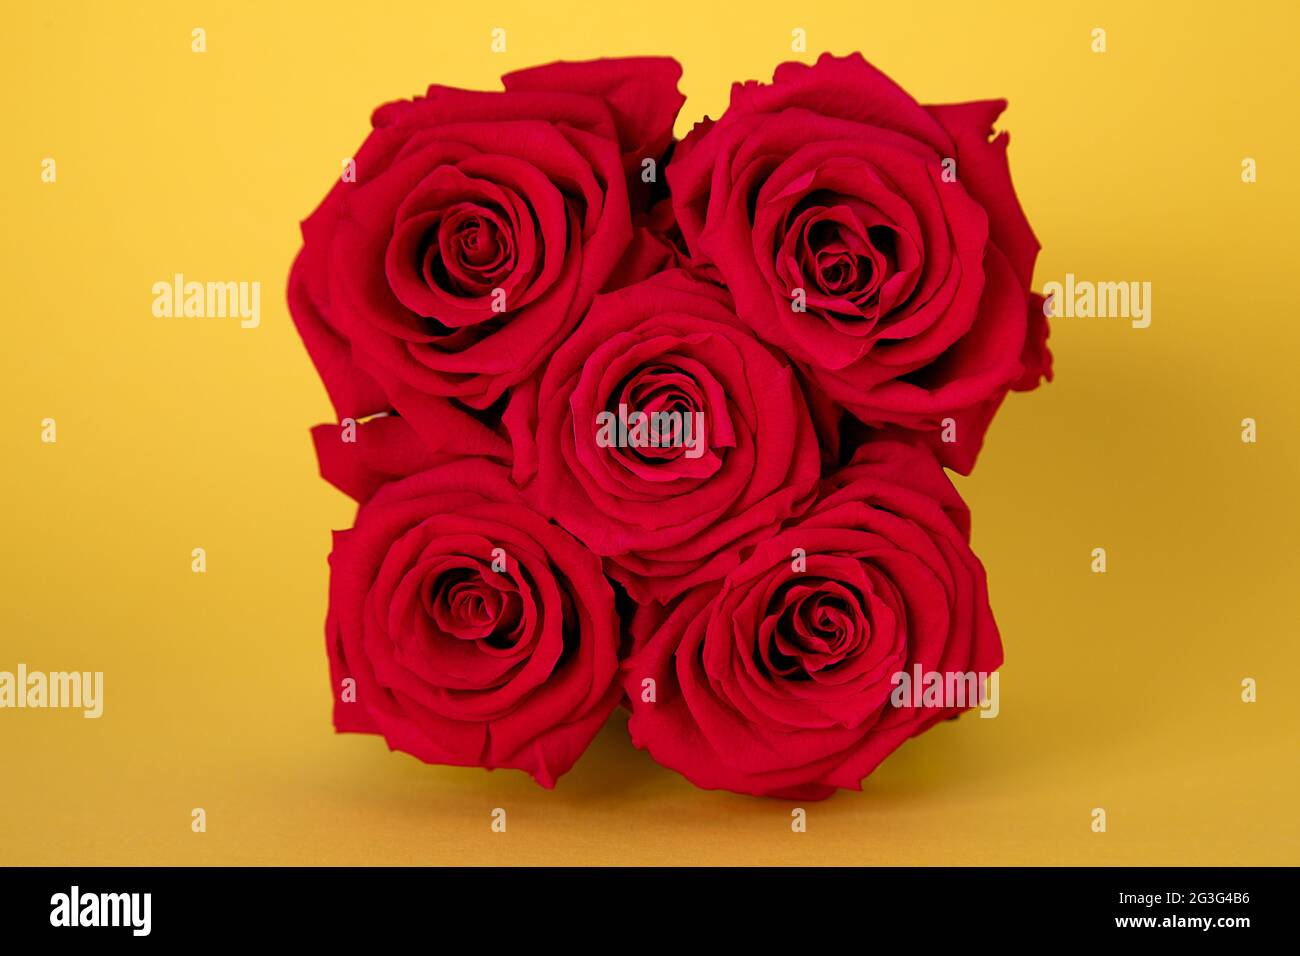 Rote infinity Rosen auf dem gelben Hintergrund Stock Photo